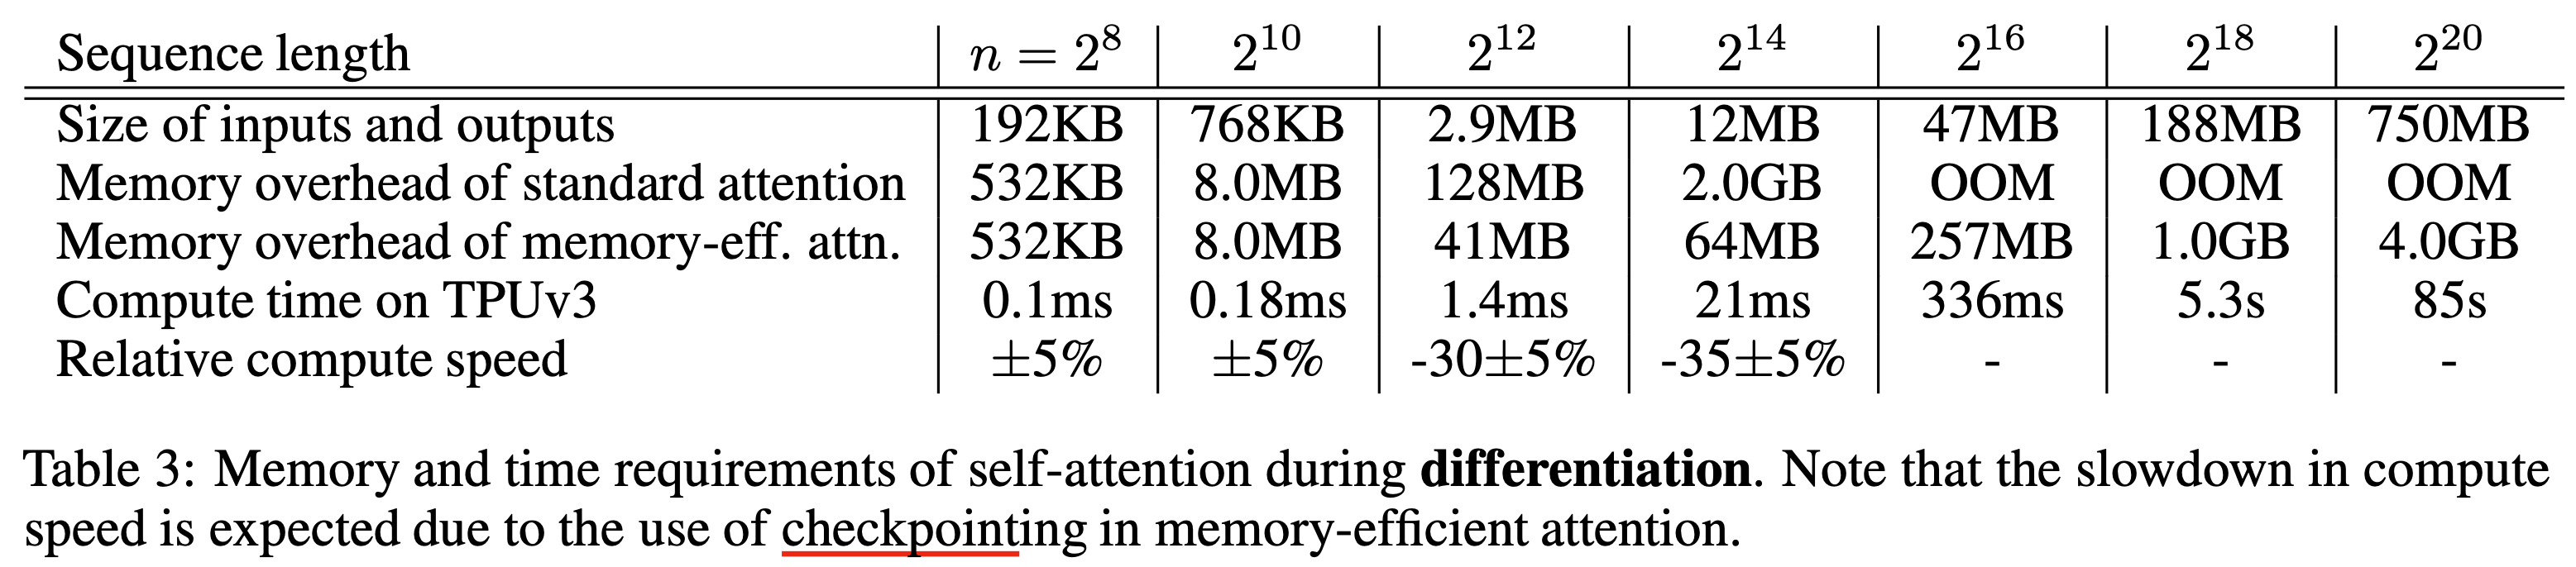 mem_efficient_paper_table3